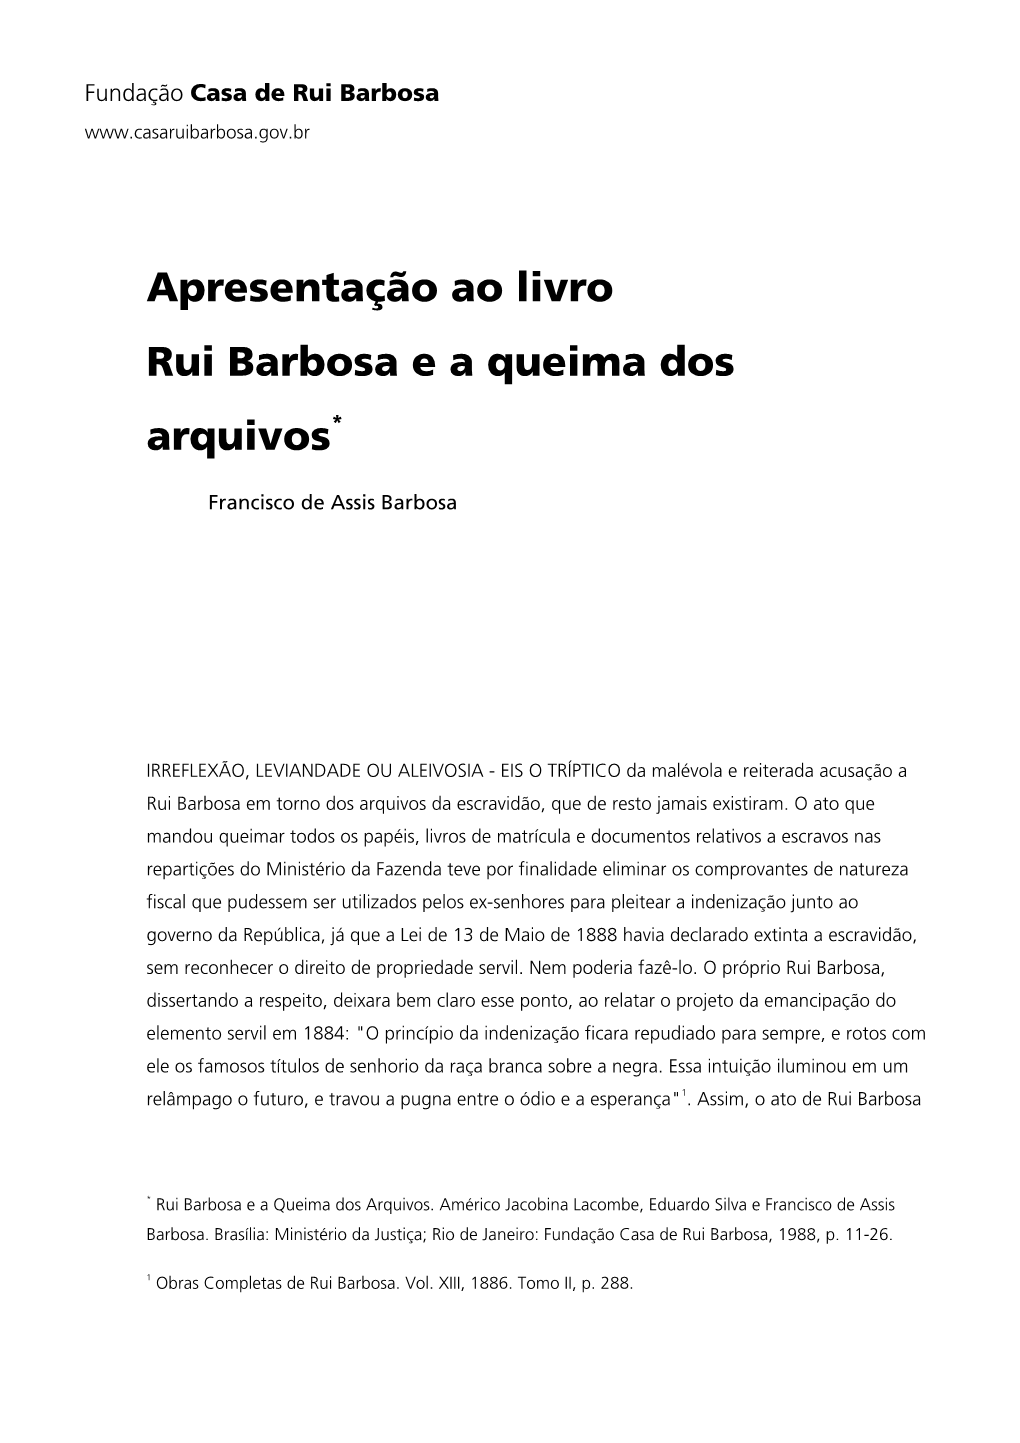 Apresentação Ao Livro Rui Barbosa E a Queima Dos Arquivos*